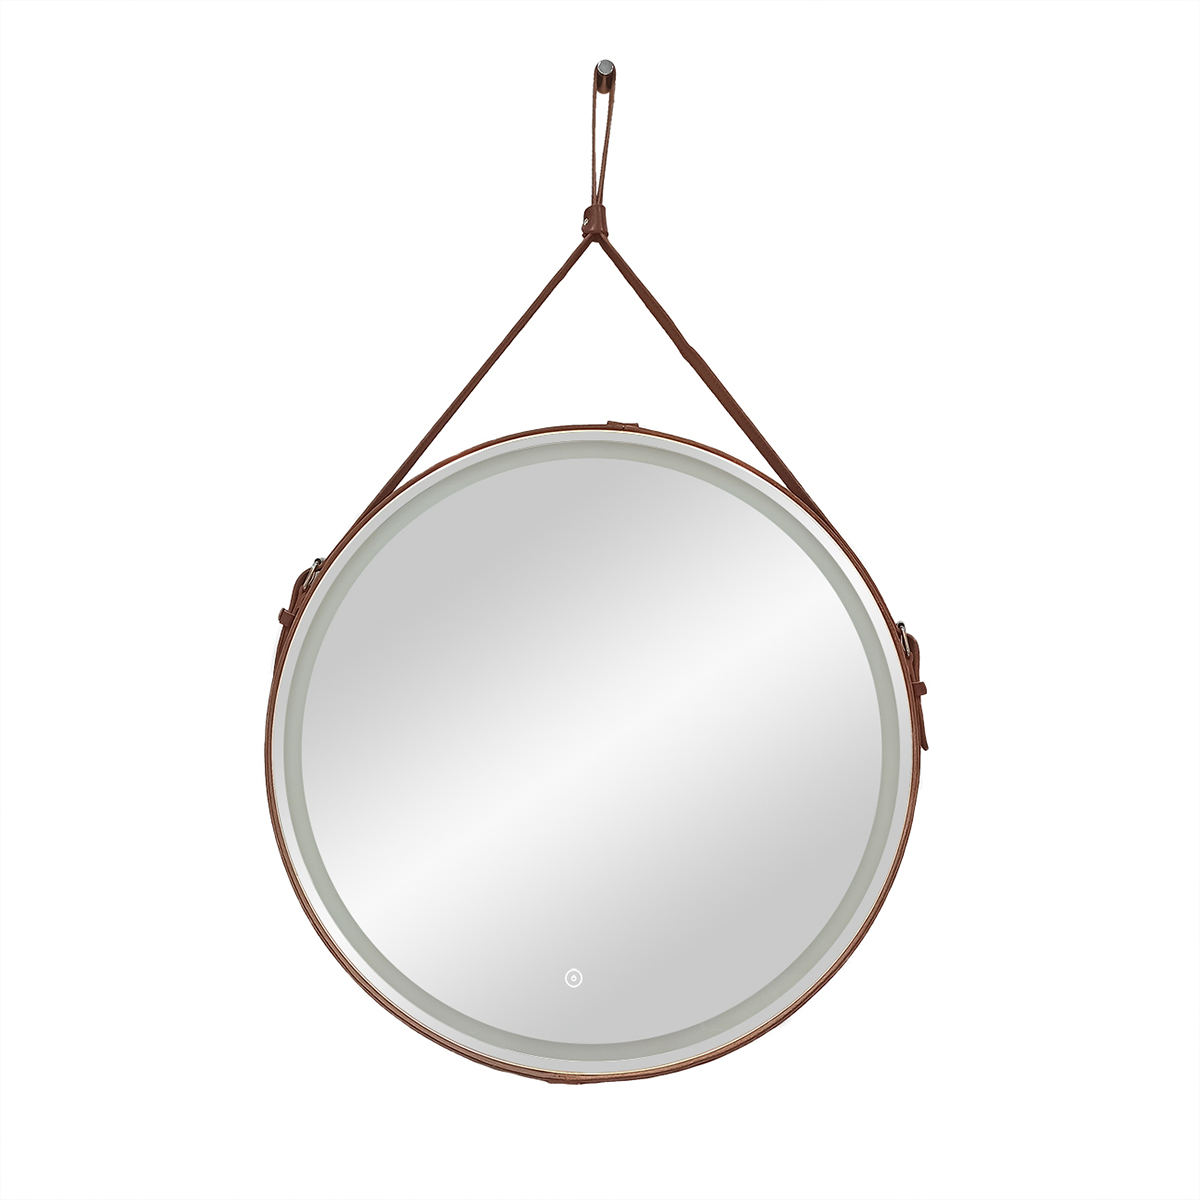 Зеркало Continent Millenium Brown D650 круглое, с LED подсветкой, кожаный ремень, коричневый